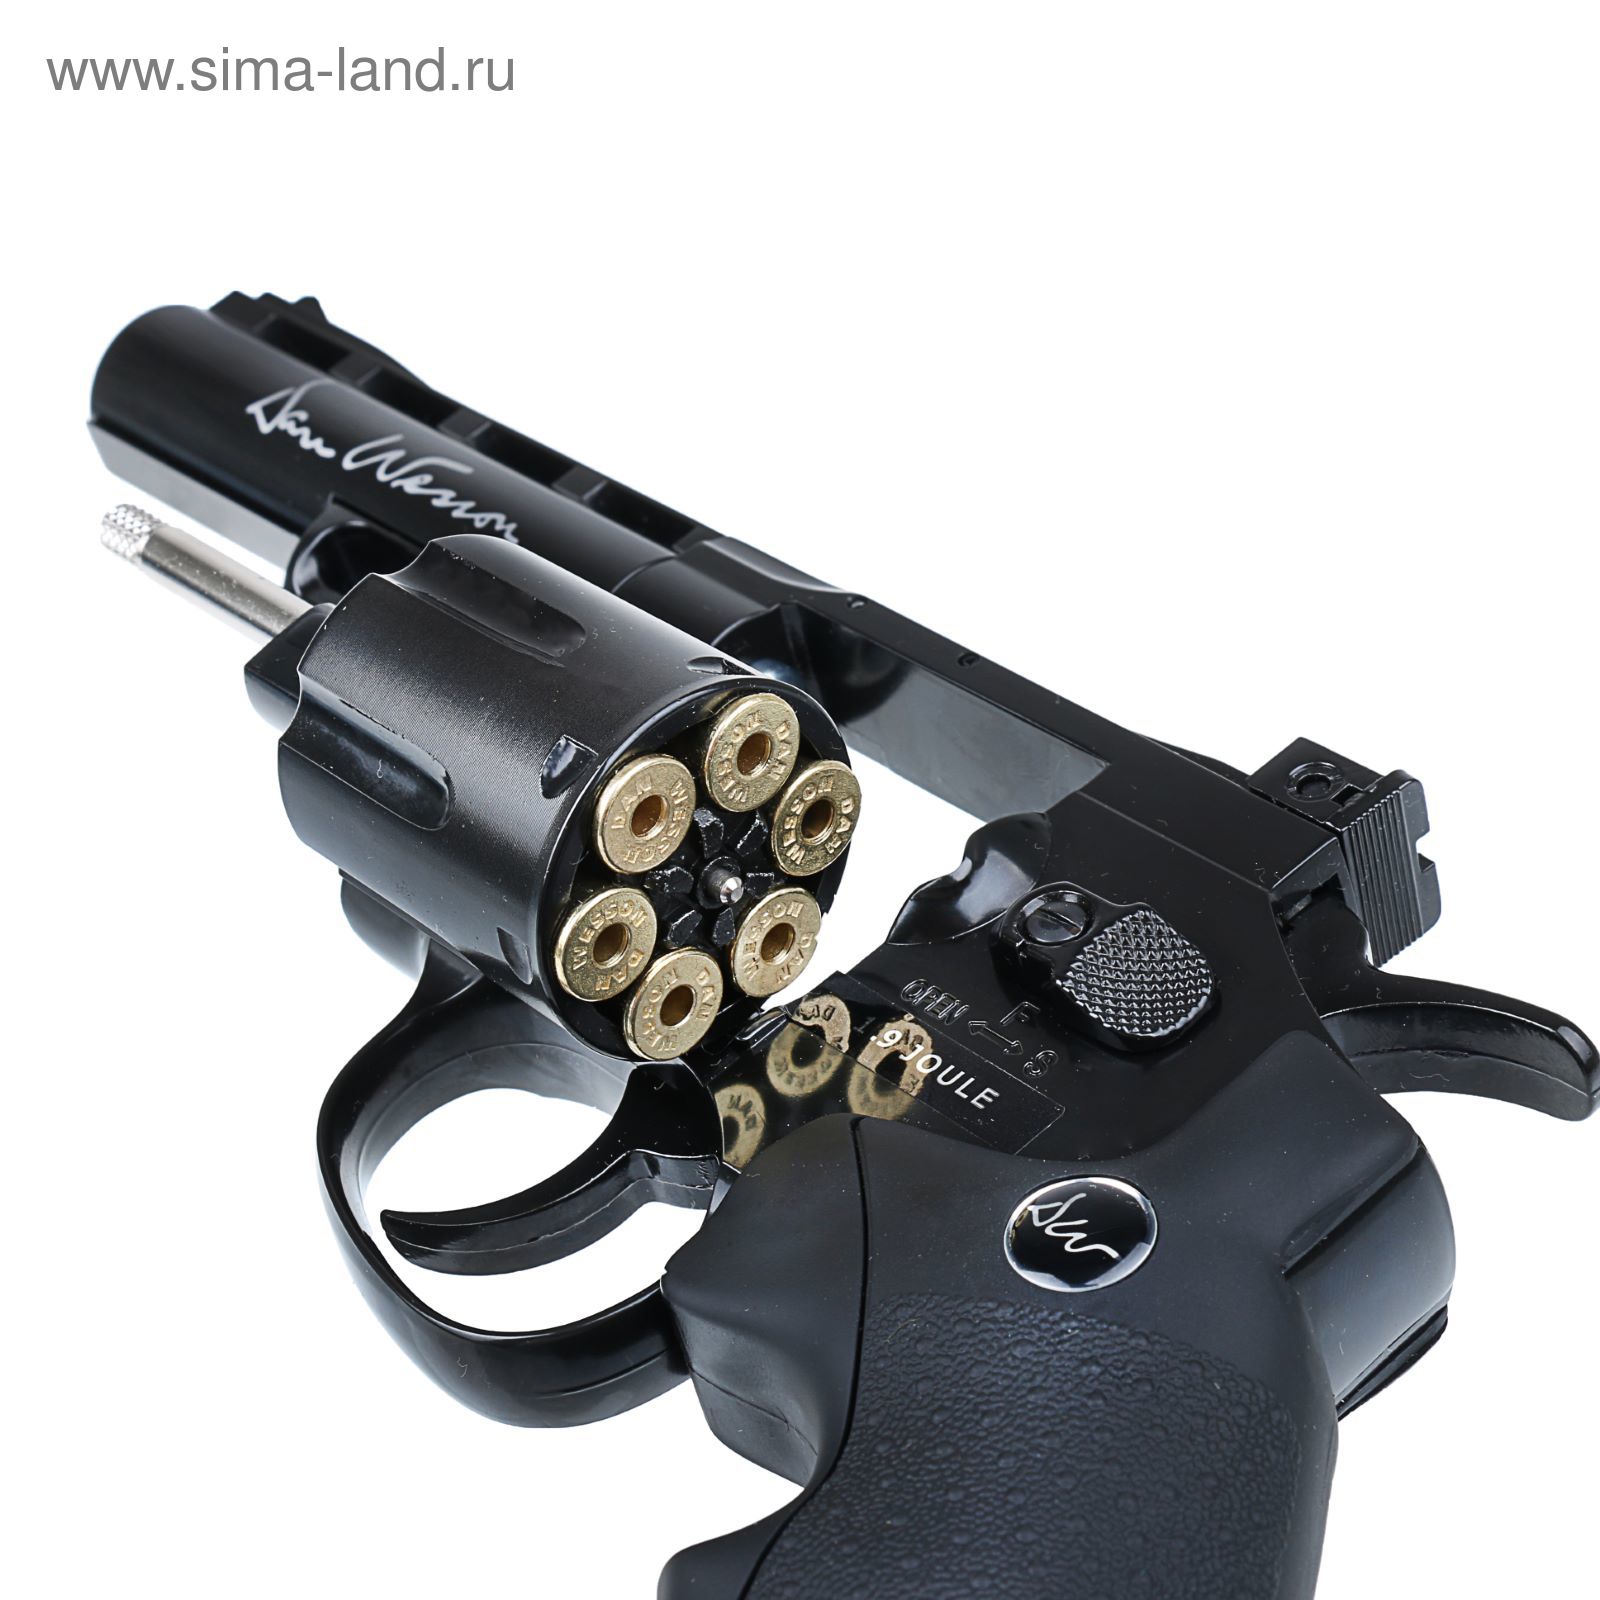 Револьвер пневматический Dan Wesson 4" (17176) черный, калибр  4,5 мм